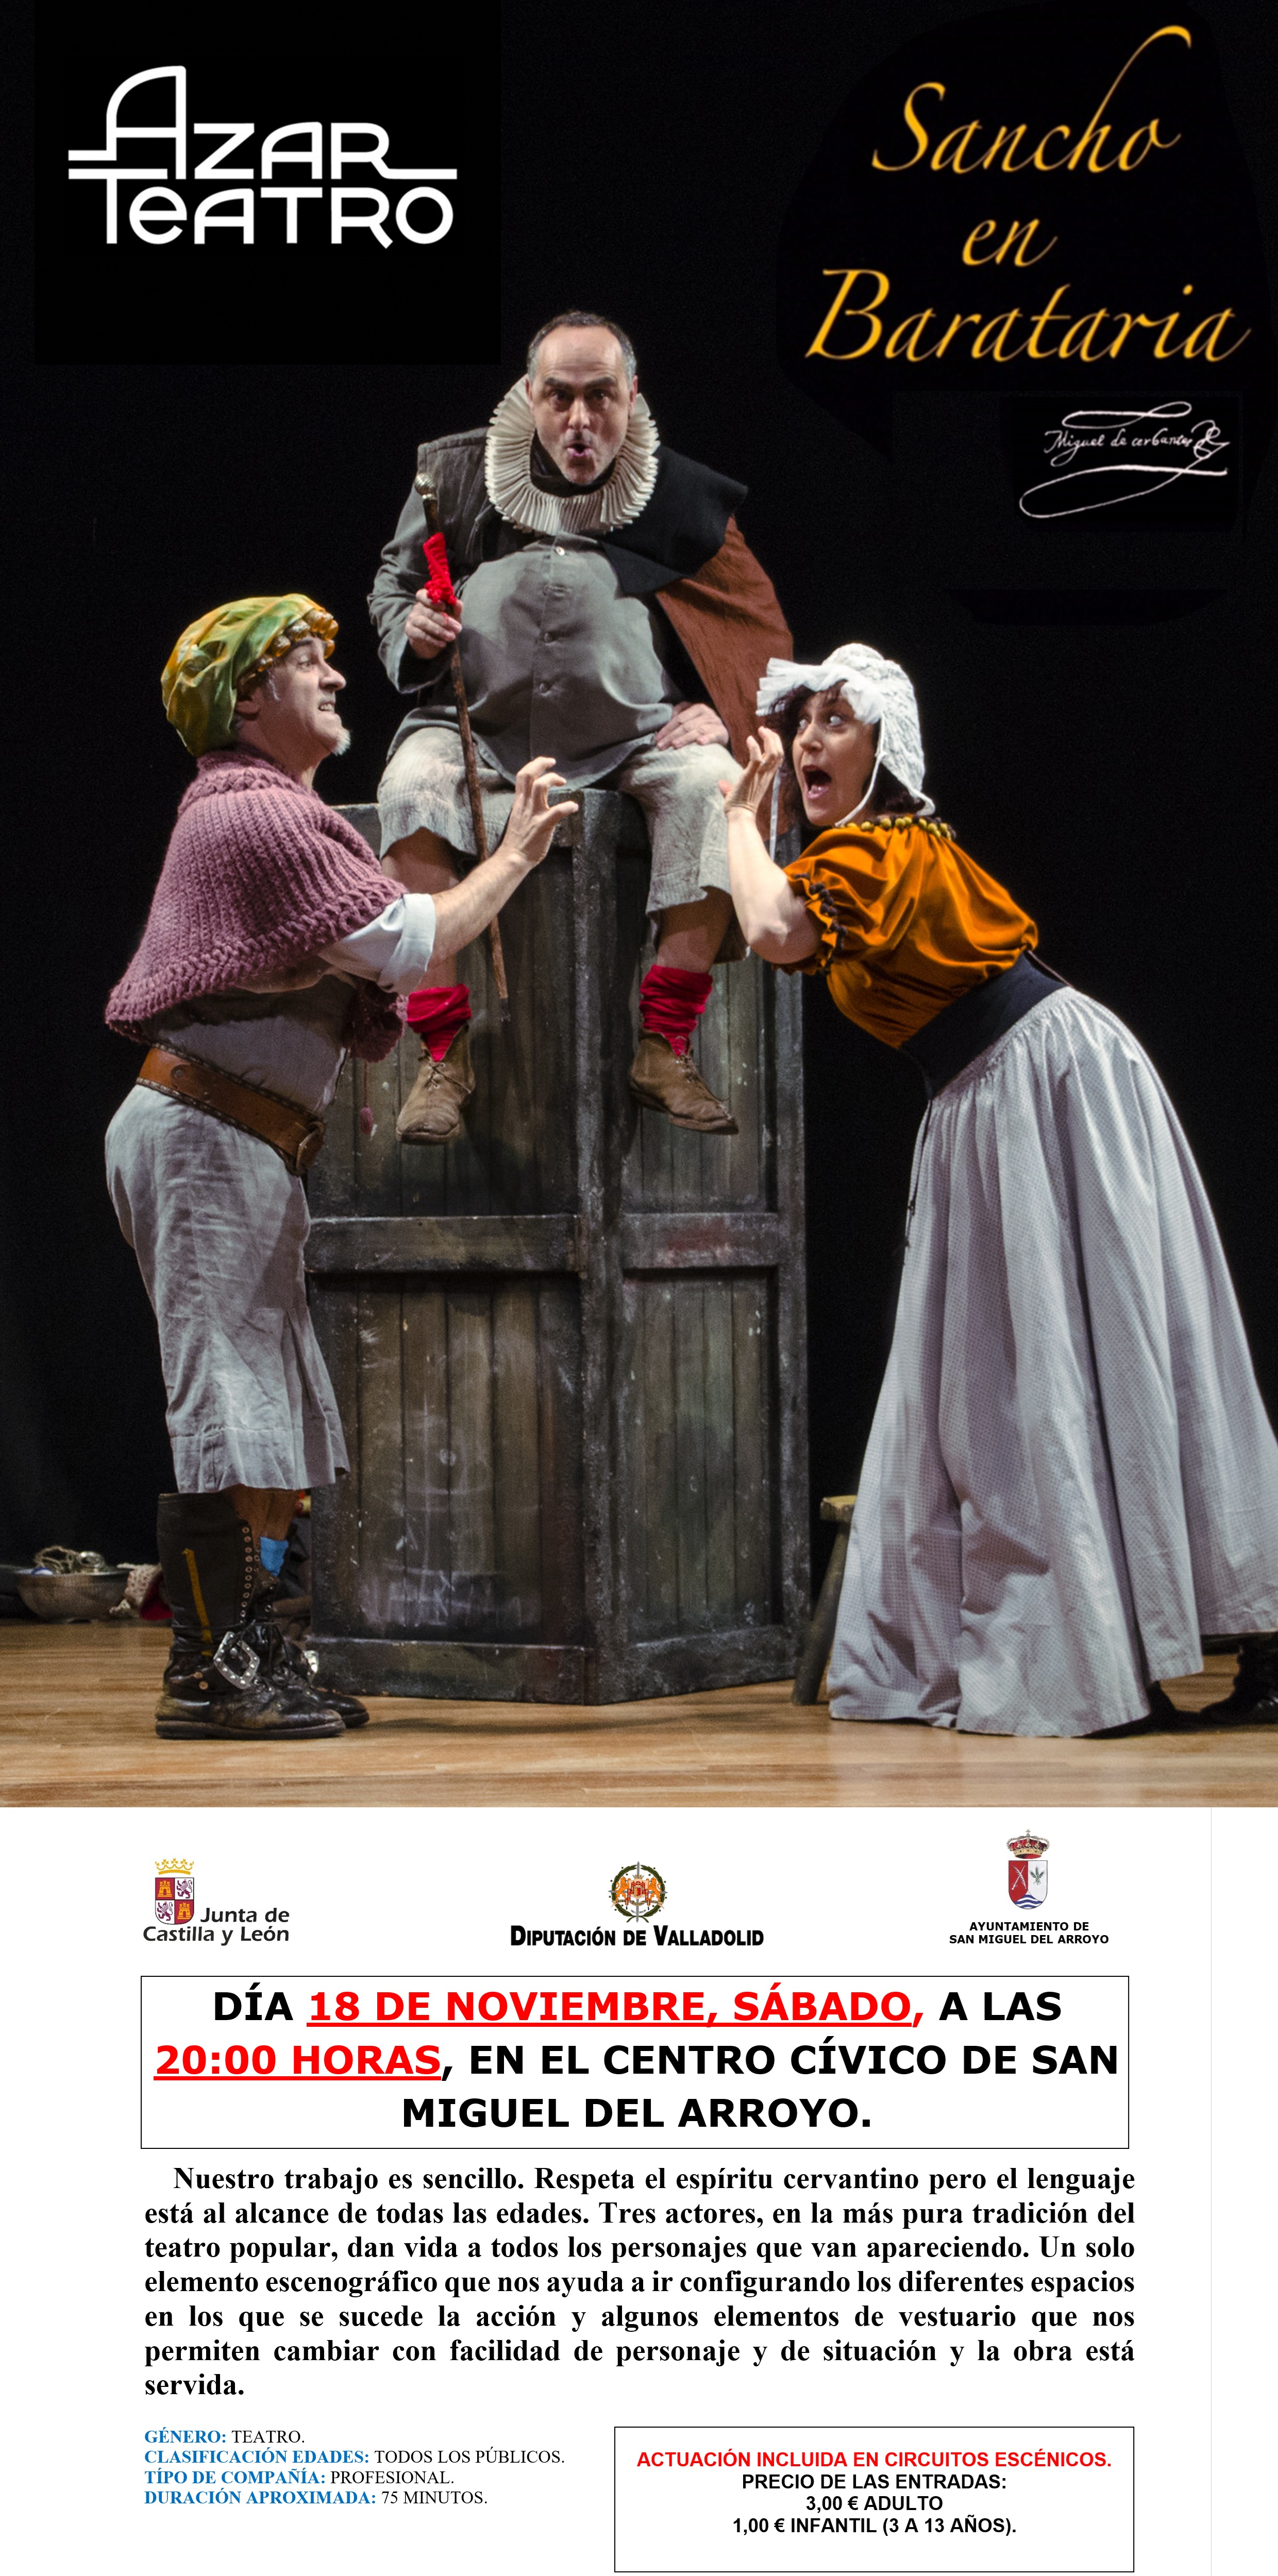 23 de Marzo: La Dama del Alba - Teatro Zorrilla de Valladolid